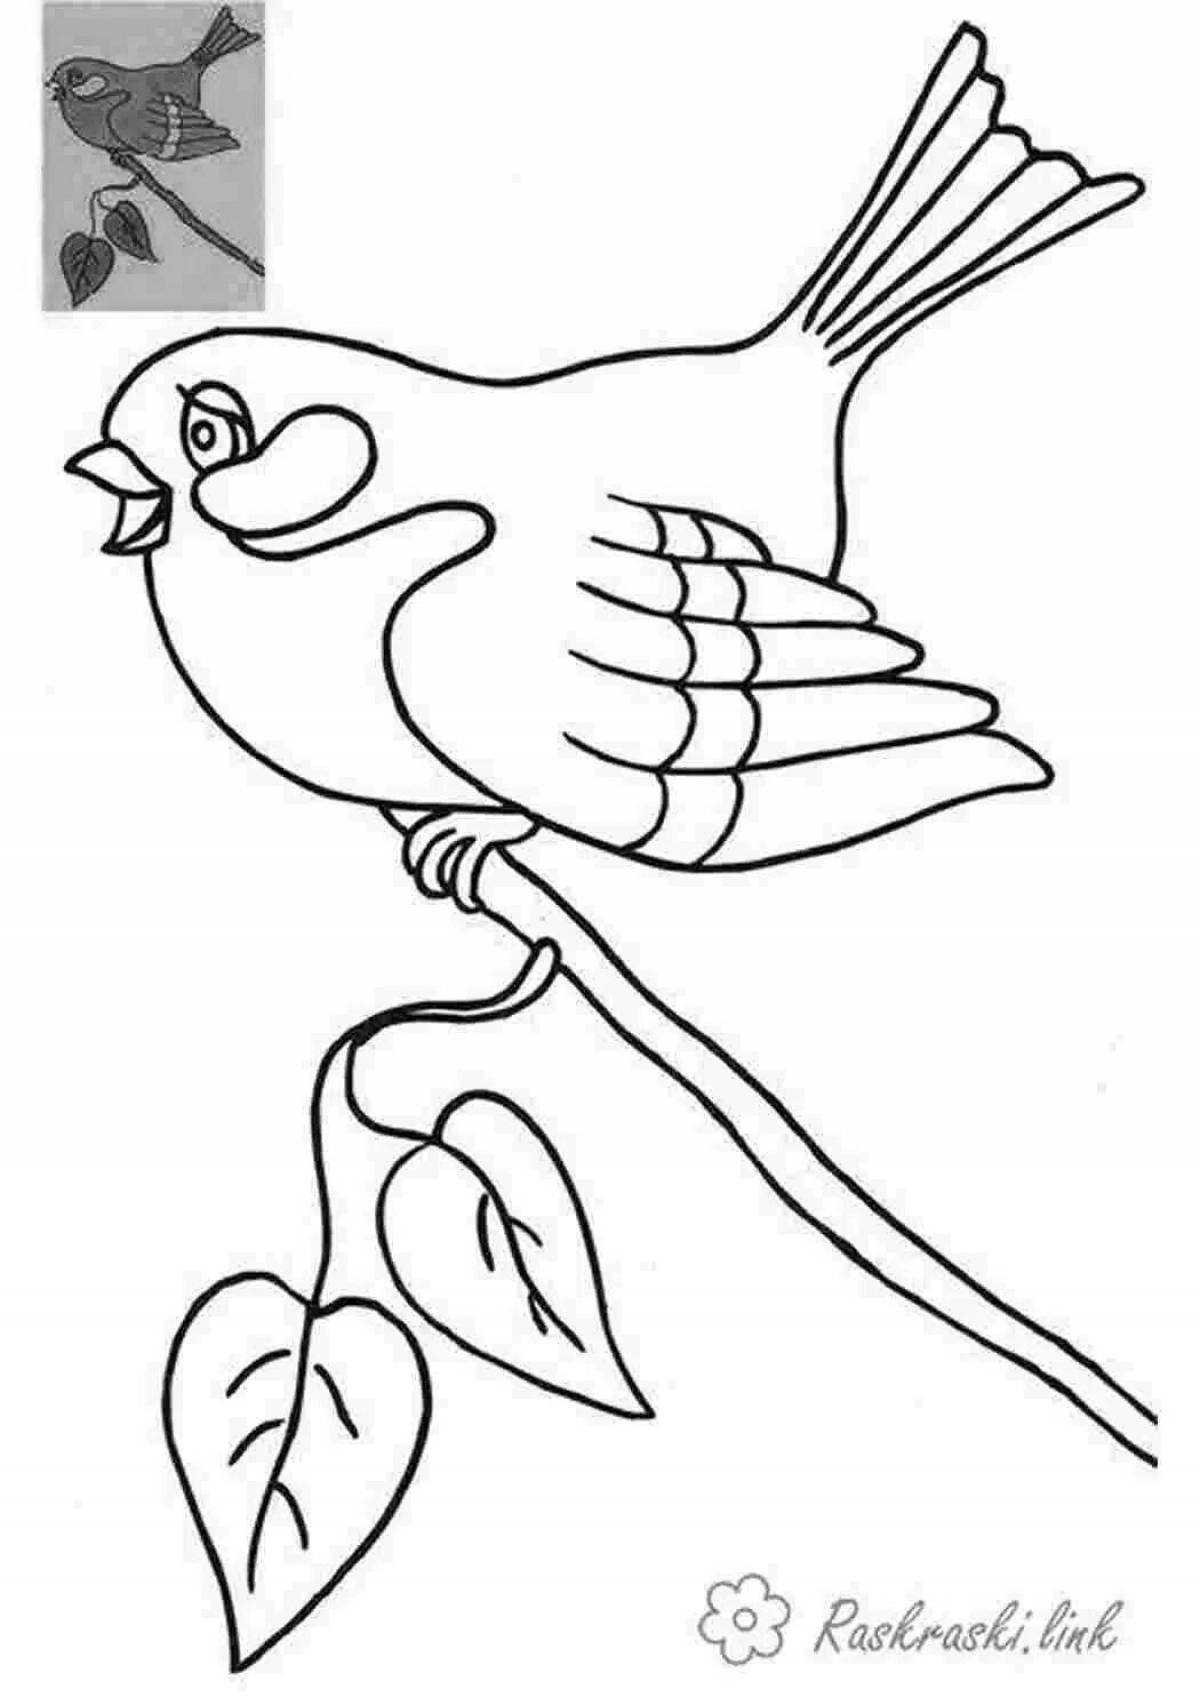 День птиц распечатать. Птицы. Раскраска. Птичка раскраска. Птицы раскраска для детей. Трафареты птиц для рисования для детей.